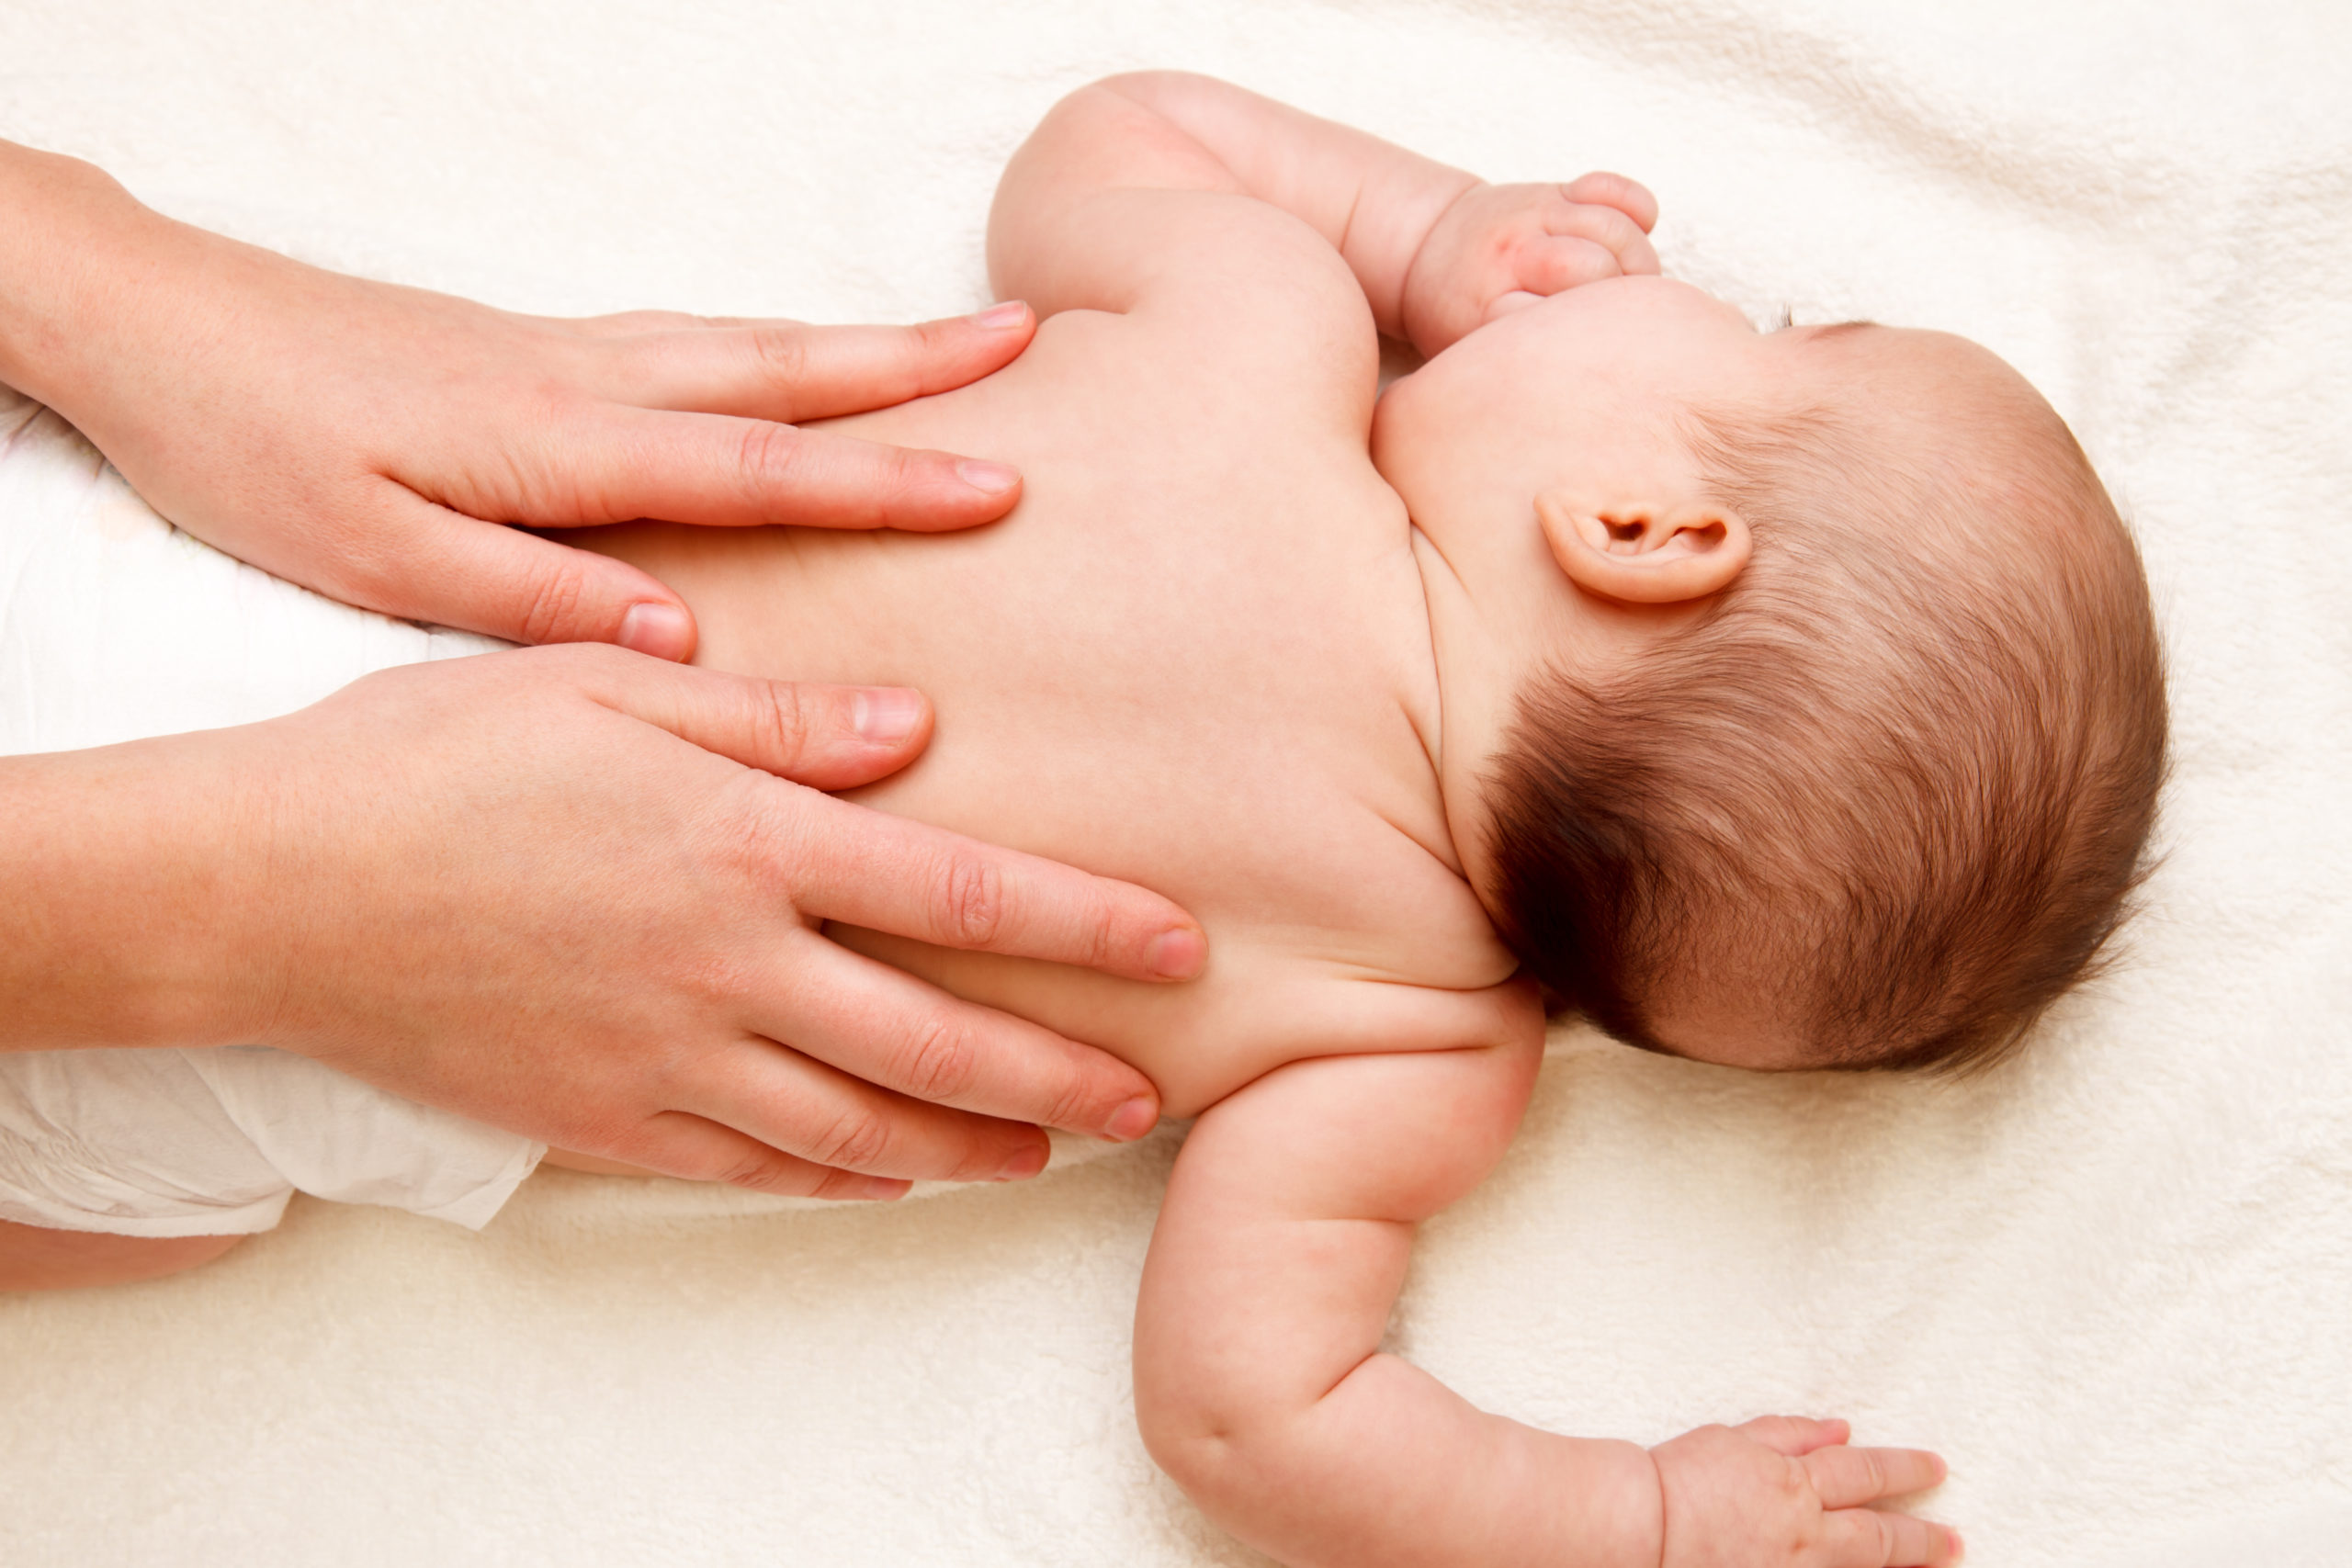 Babymassage Hände auf Babys Rücken